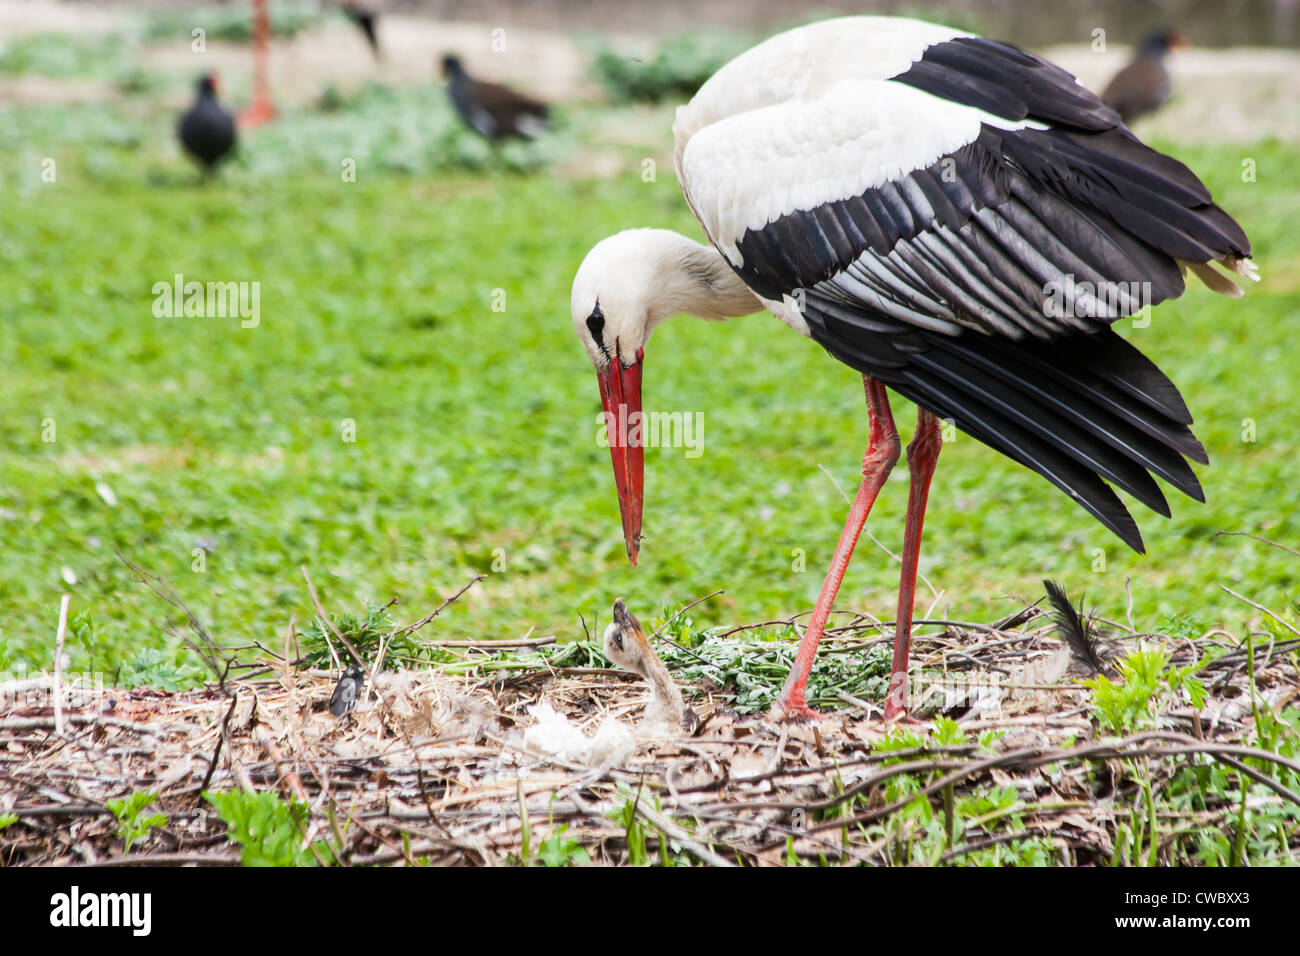 Ein Mutter-Storch, füttern ihre jungen Bäumchen, gibt die Mutter das Essen, das sie sich vorher verdaut hat Stockfoto